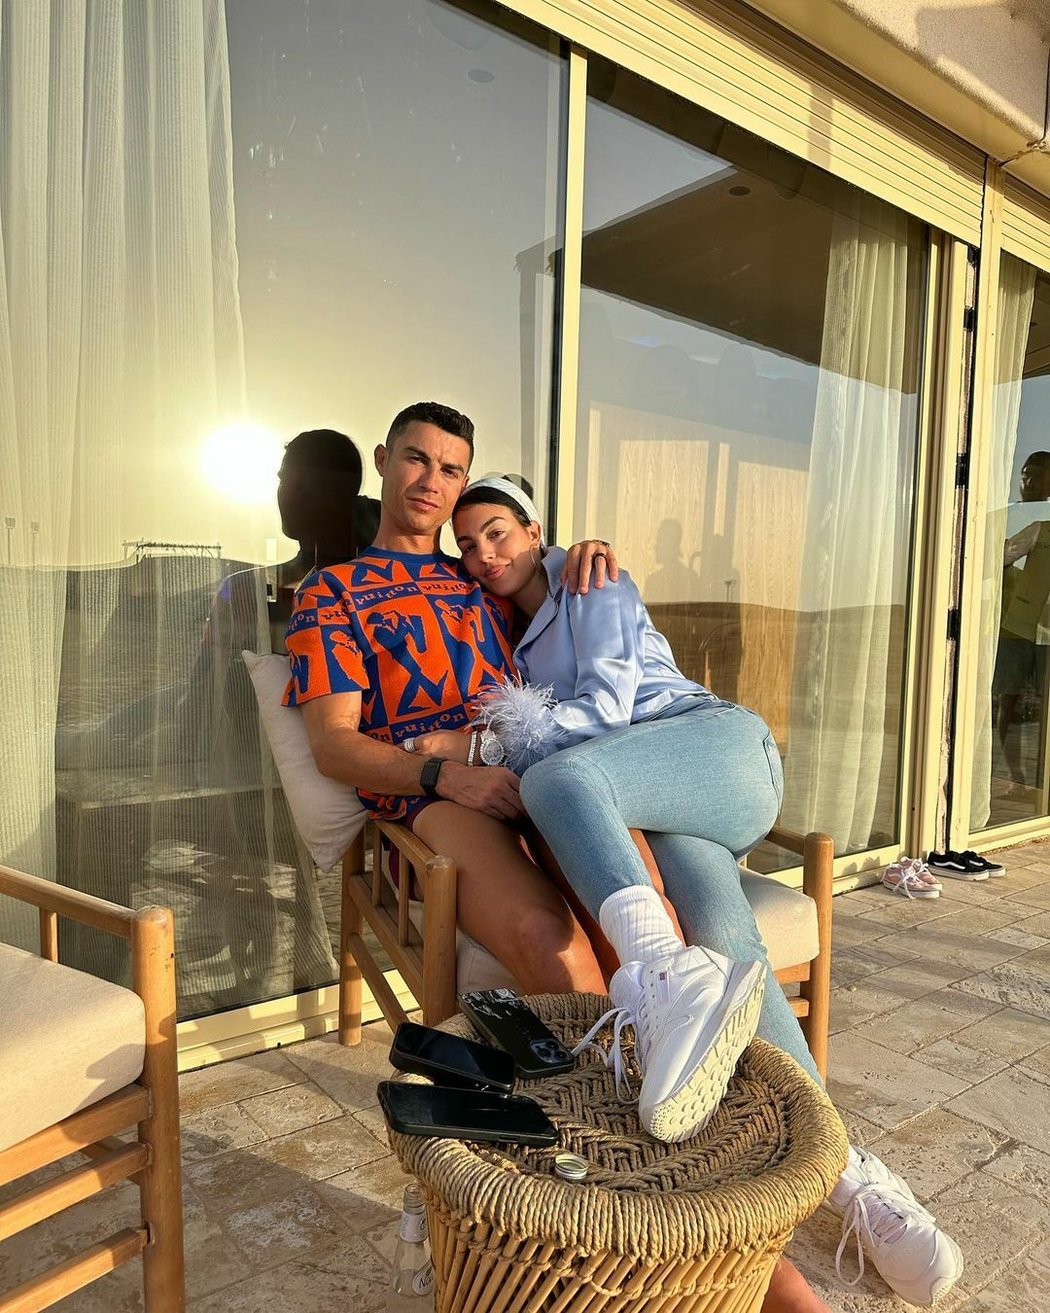 Cristiano Ronaldo a Georgina Rodríguez bydleli spolu v Saudské Arábii navzdory tamním zákonům, které brání nesezdaným párům v soužití ve společné domácnosti.